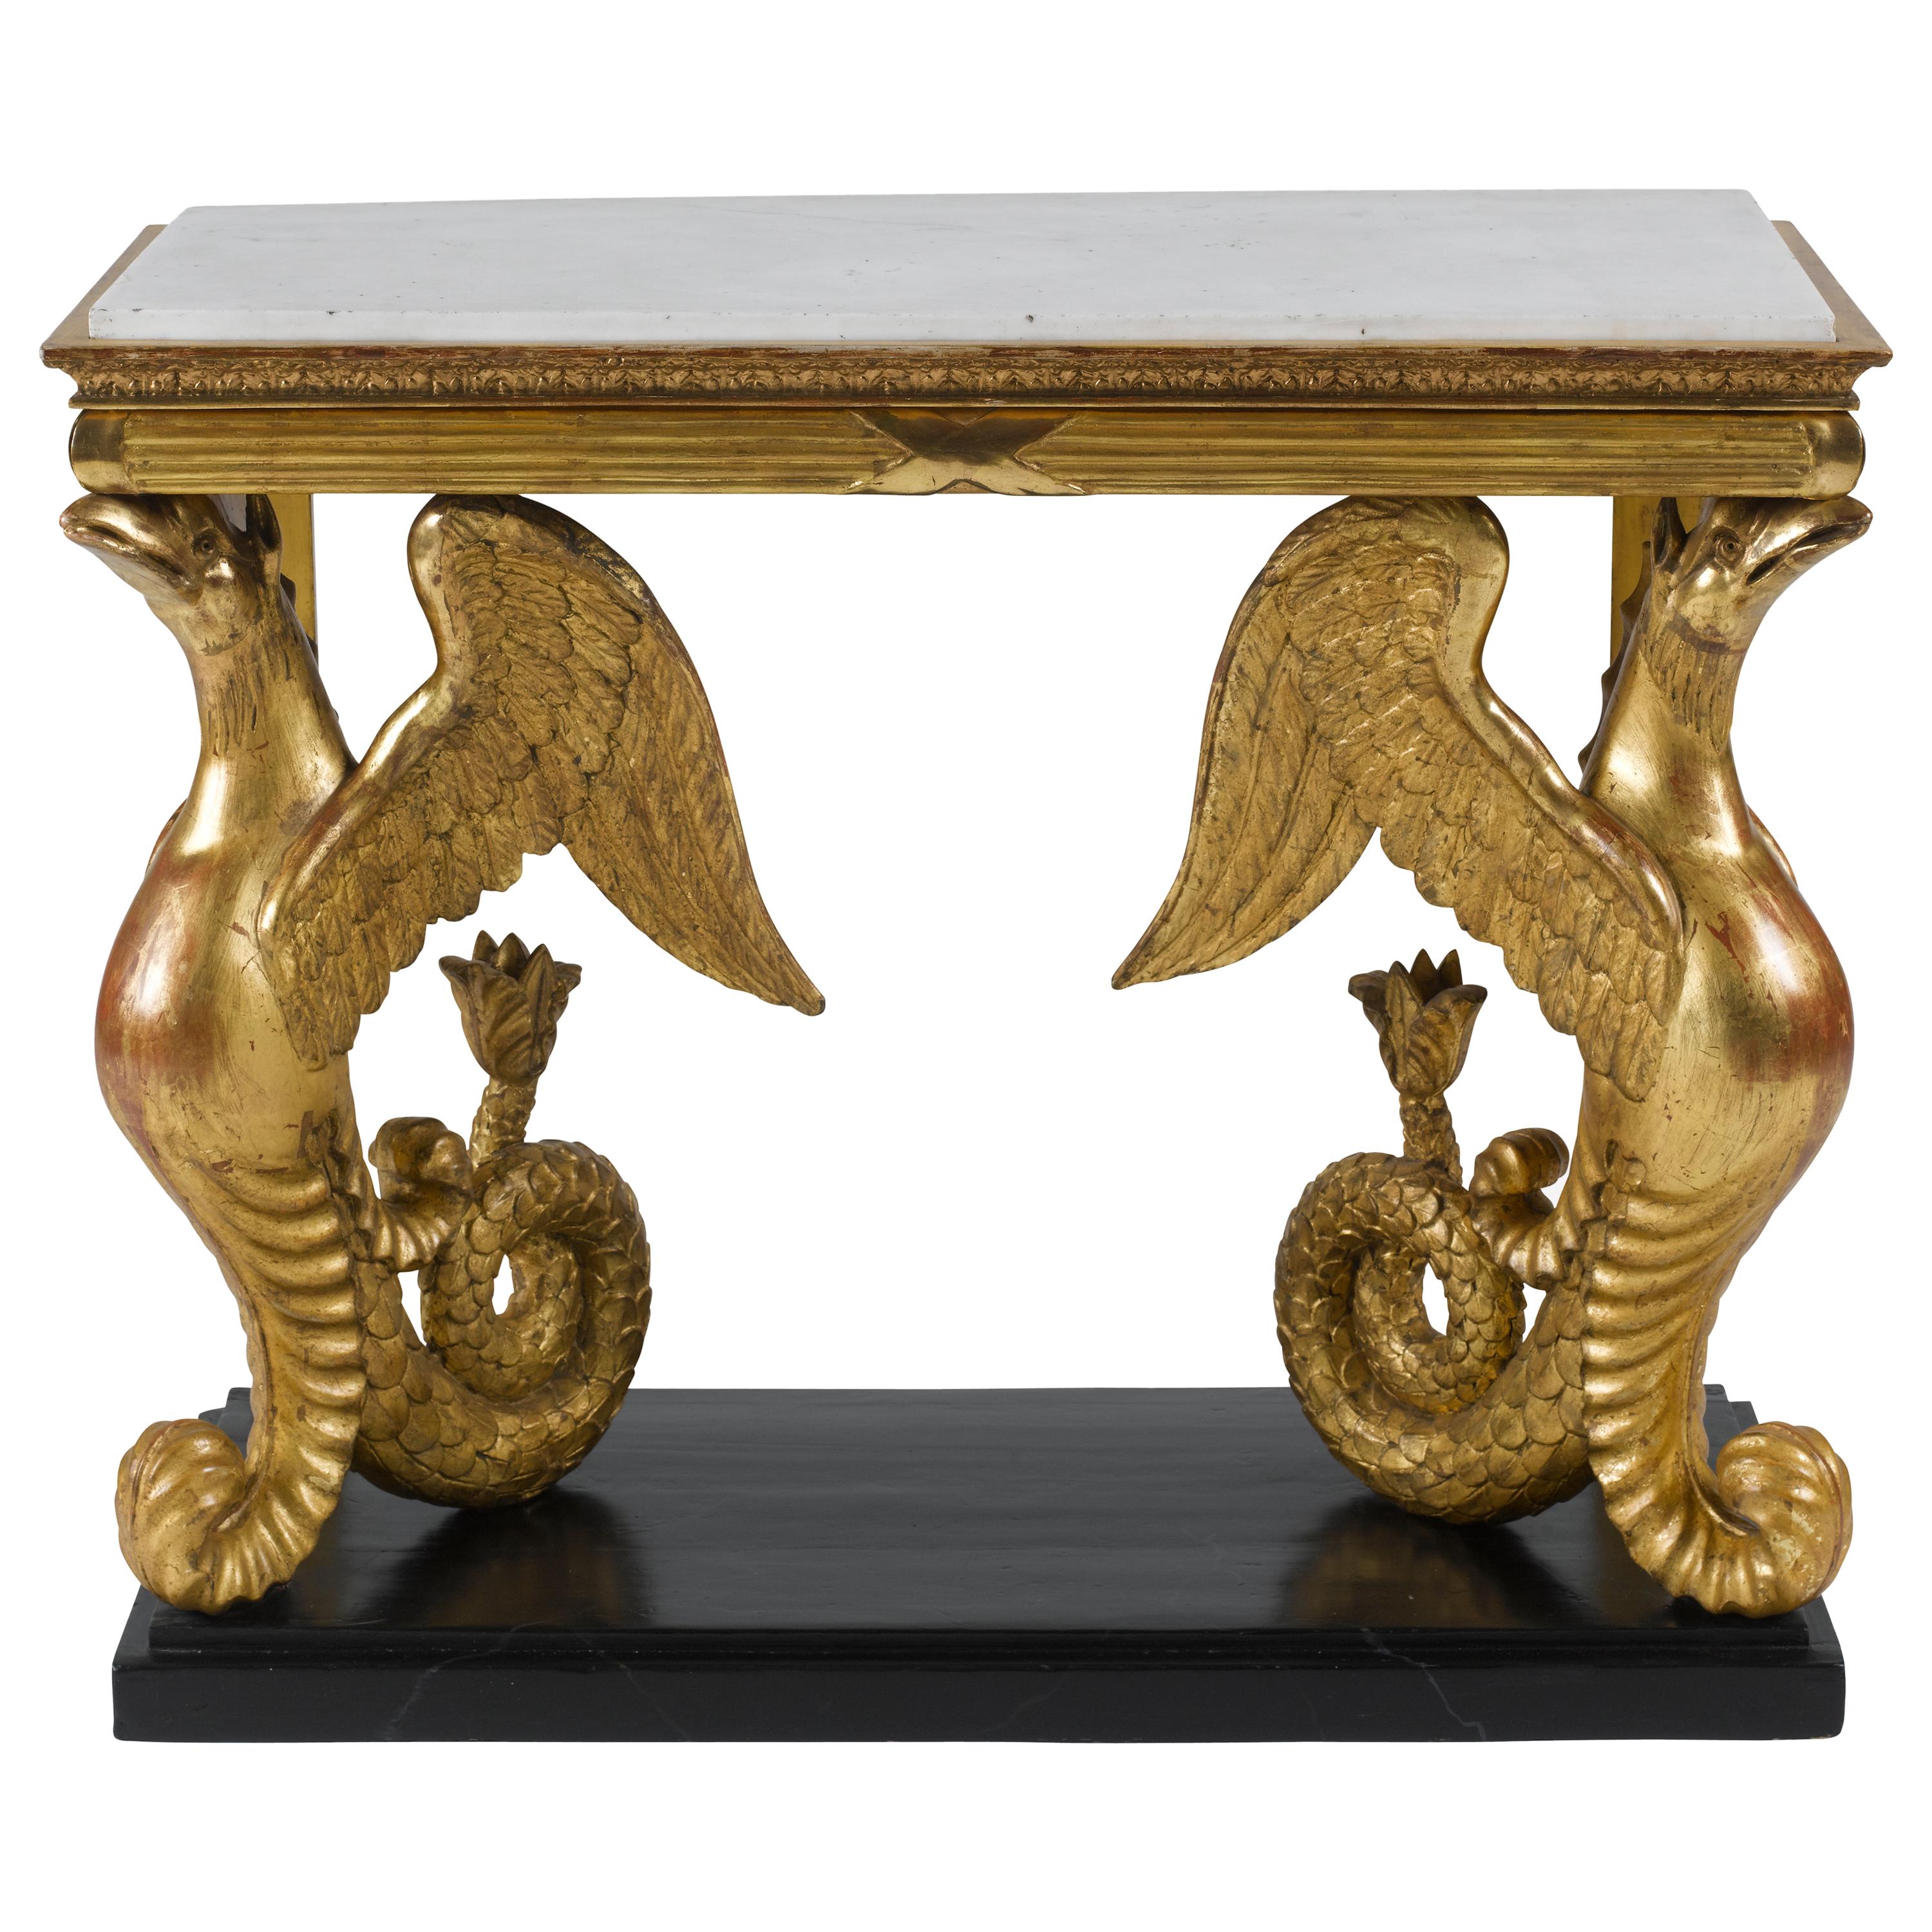 Insolite table console en bois doré sculpté suédois du début du 19e siècle